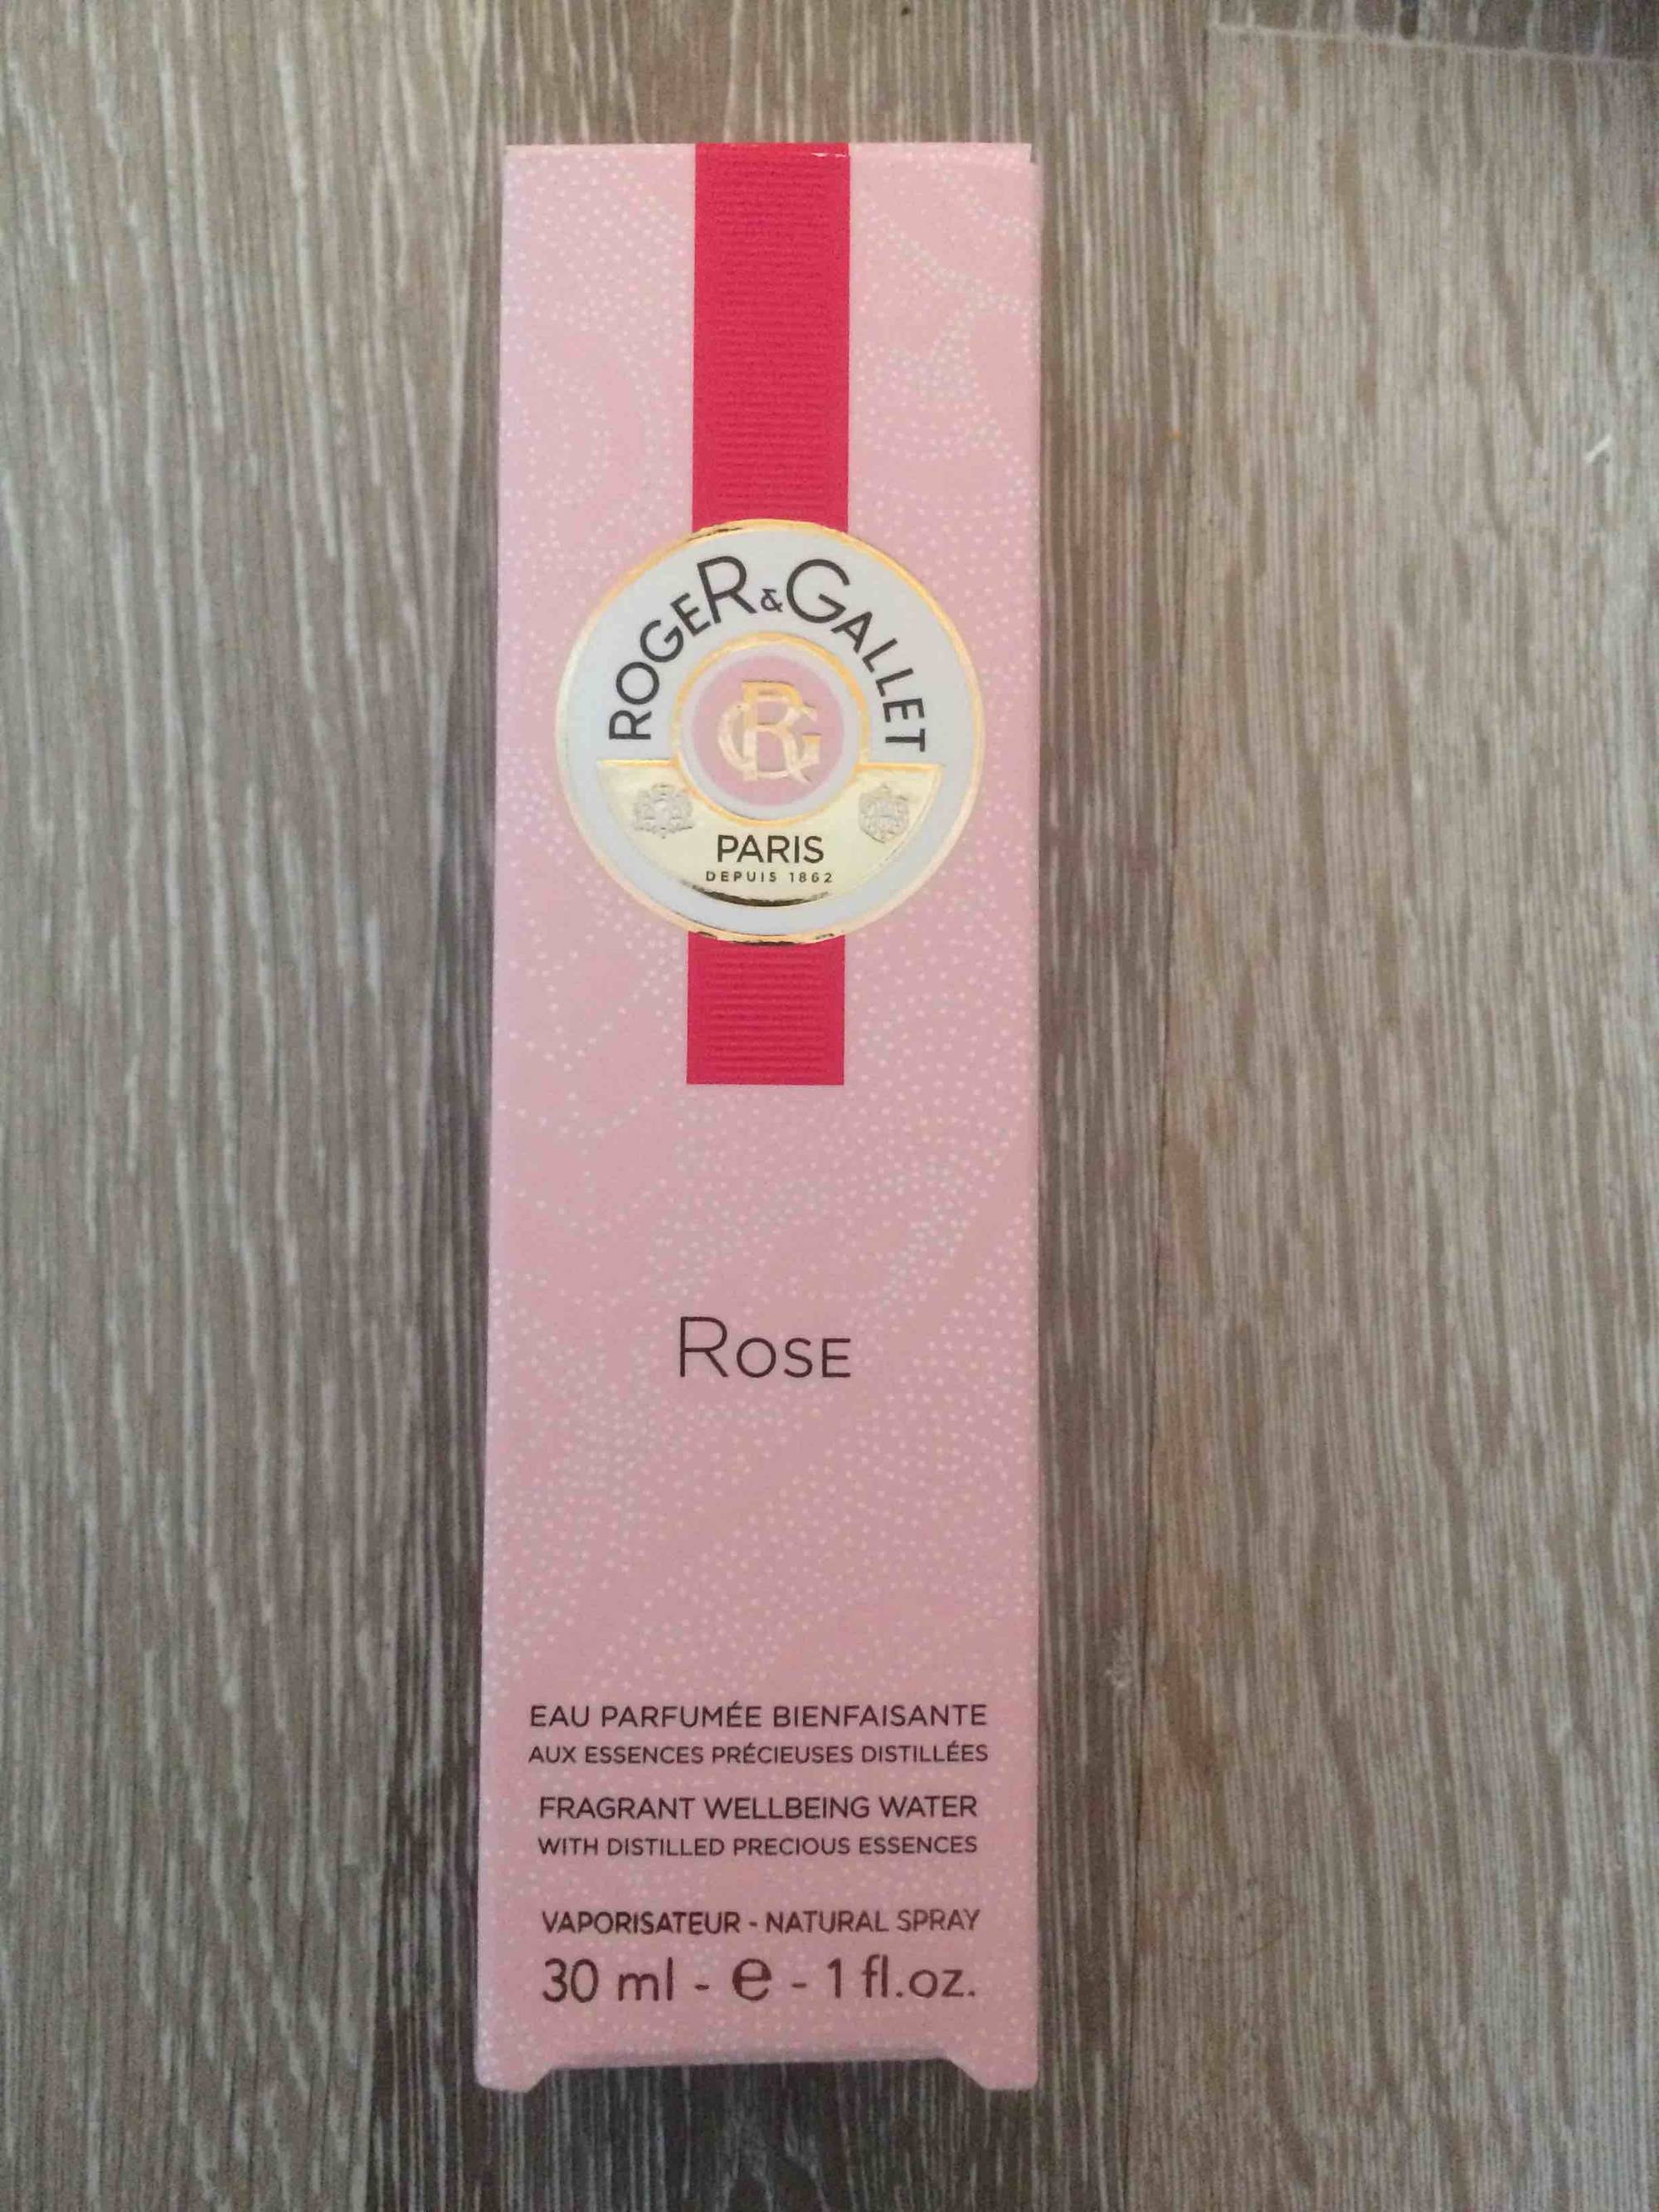 ROGER & GALLET PARIS - Rose - Eau parfumée bienfaisante